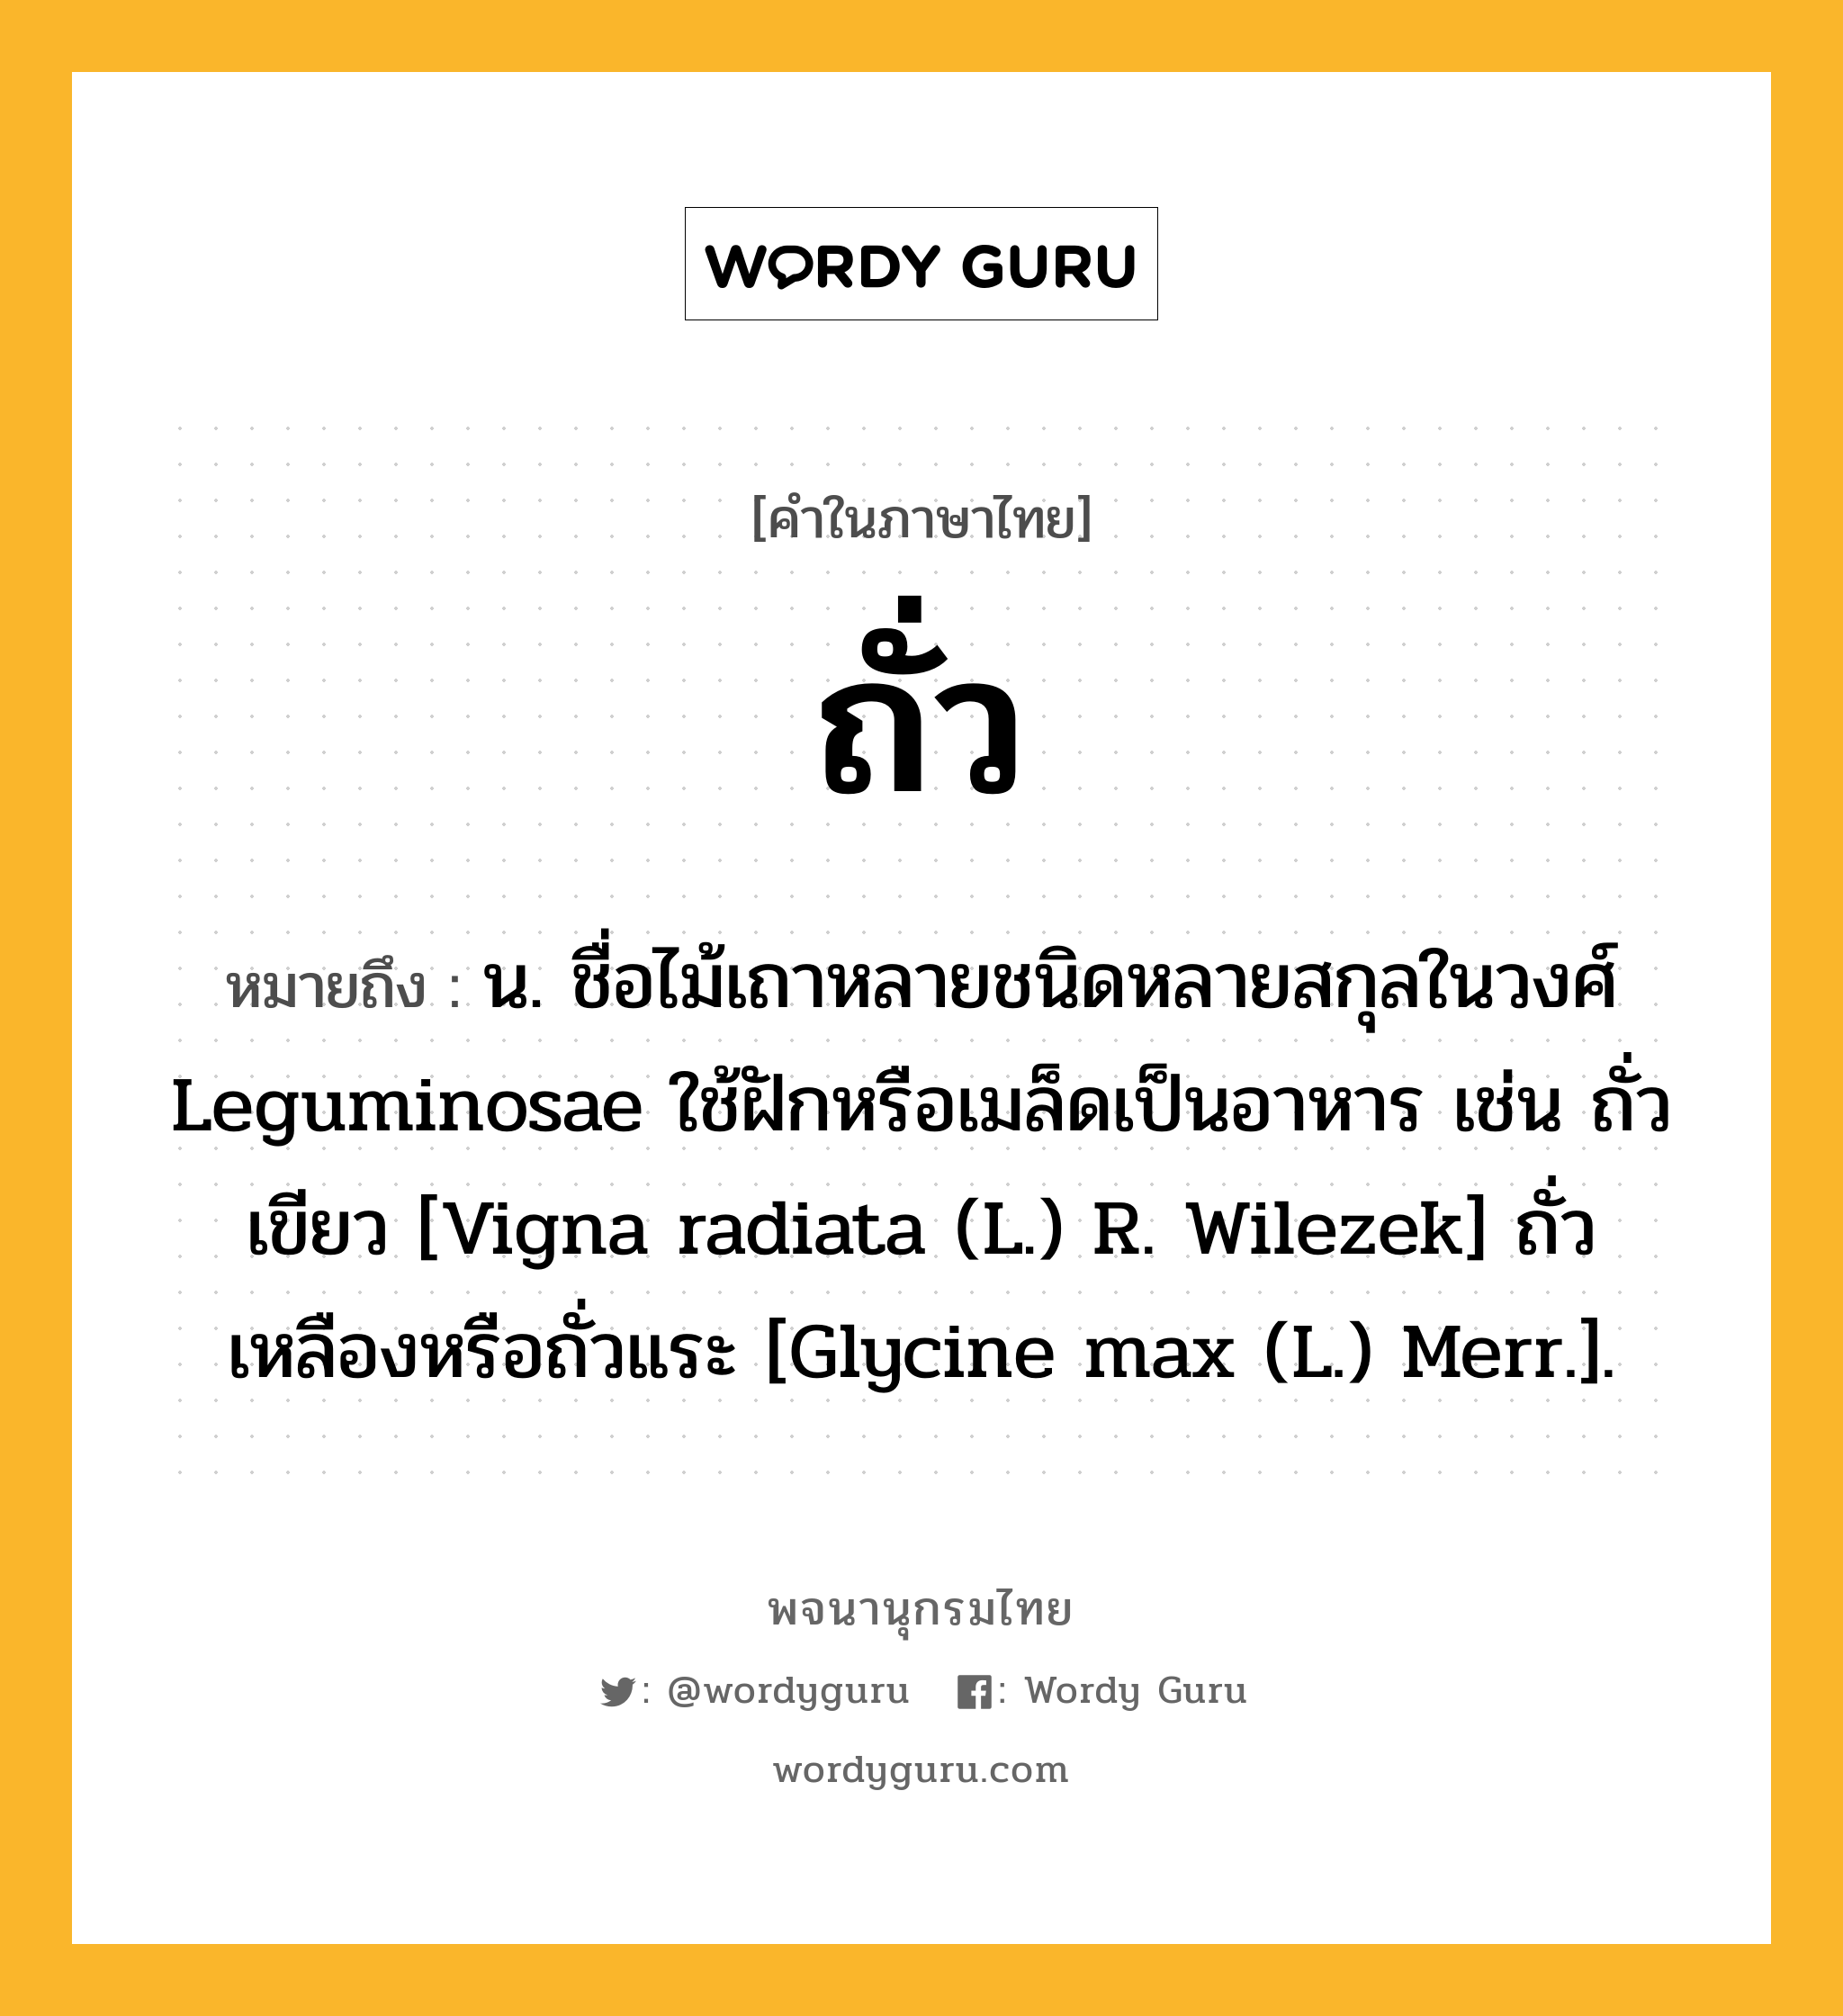 ถั่ว ความหมาย หมายถึงอะไร?, คำในภาษาไทย ถั่ว หมายถึง น. ชื่อไม้เถาหลายชนิดหลายสกุลในวงศ์ Leguminosae ใช้ฝักหรือเมล็ดเป็นอาหาร เช่น ถั่วเขียว [Vigna radiata (L.) R. Wilezek] ถั่วเหลืองหรือถั่วแระ [Glycine max (L.) Merr.].